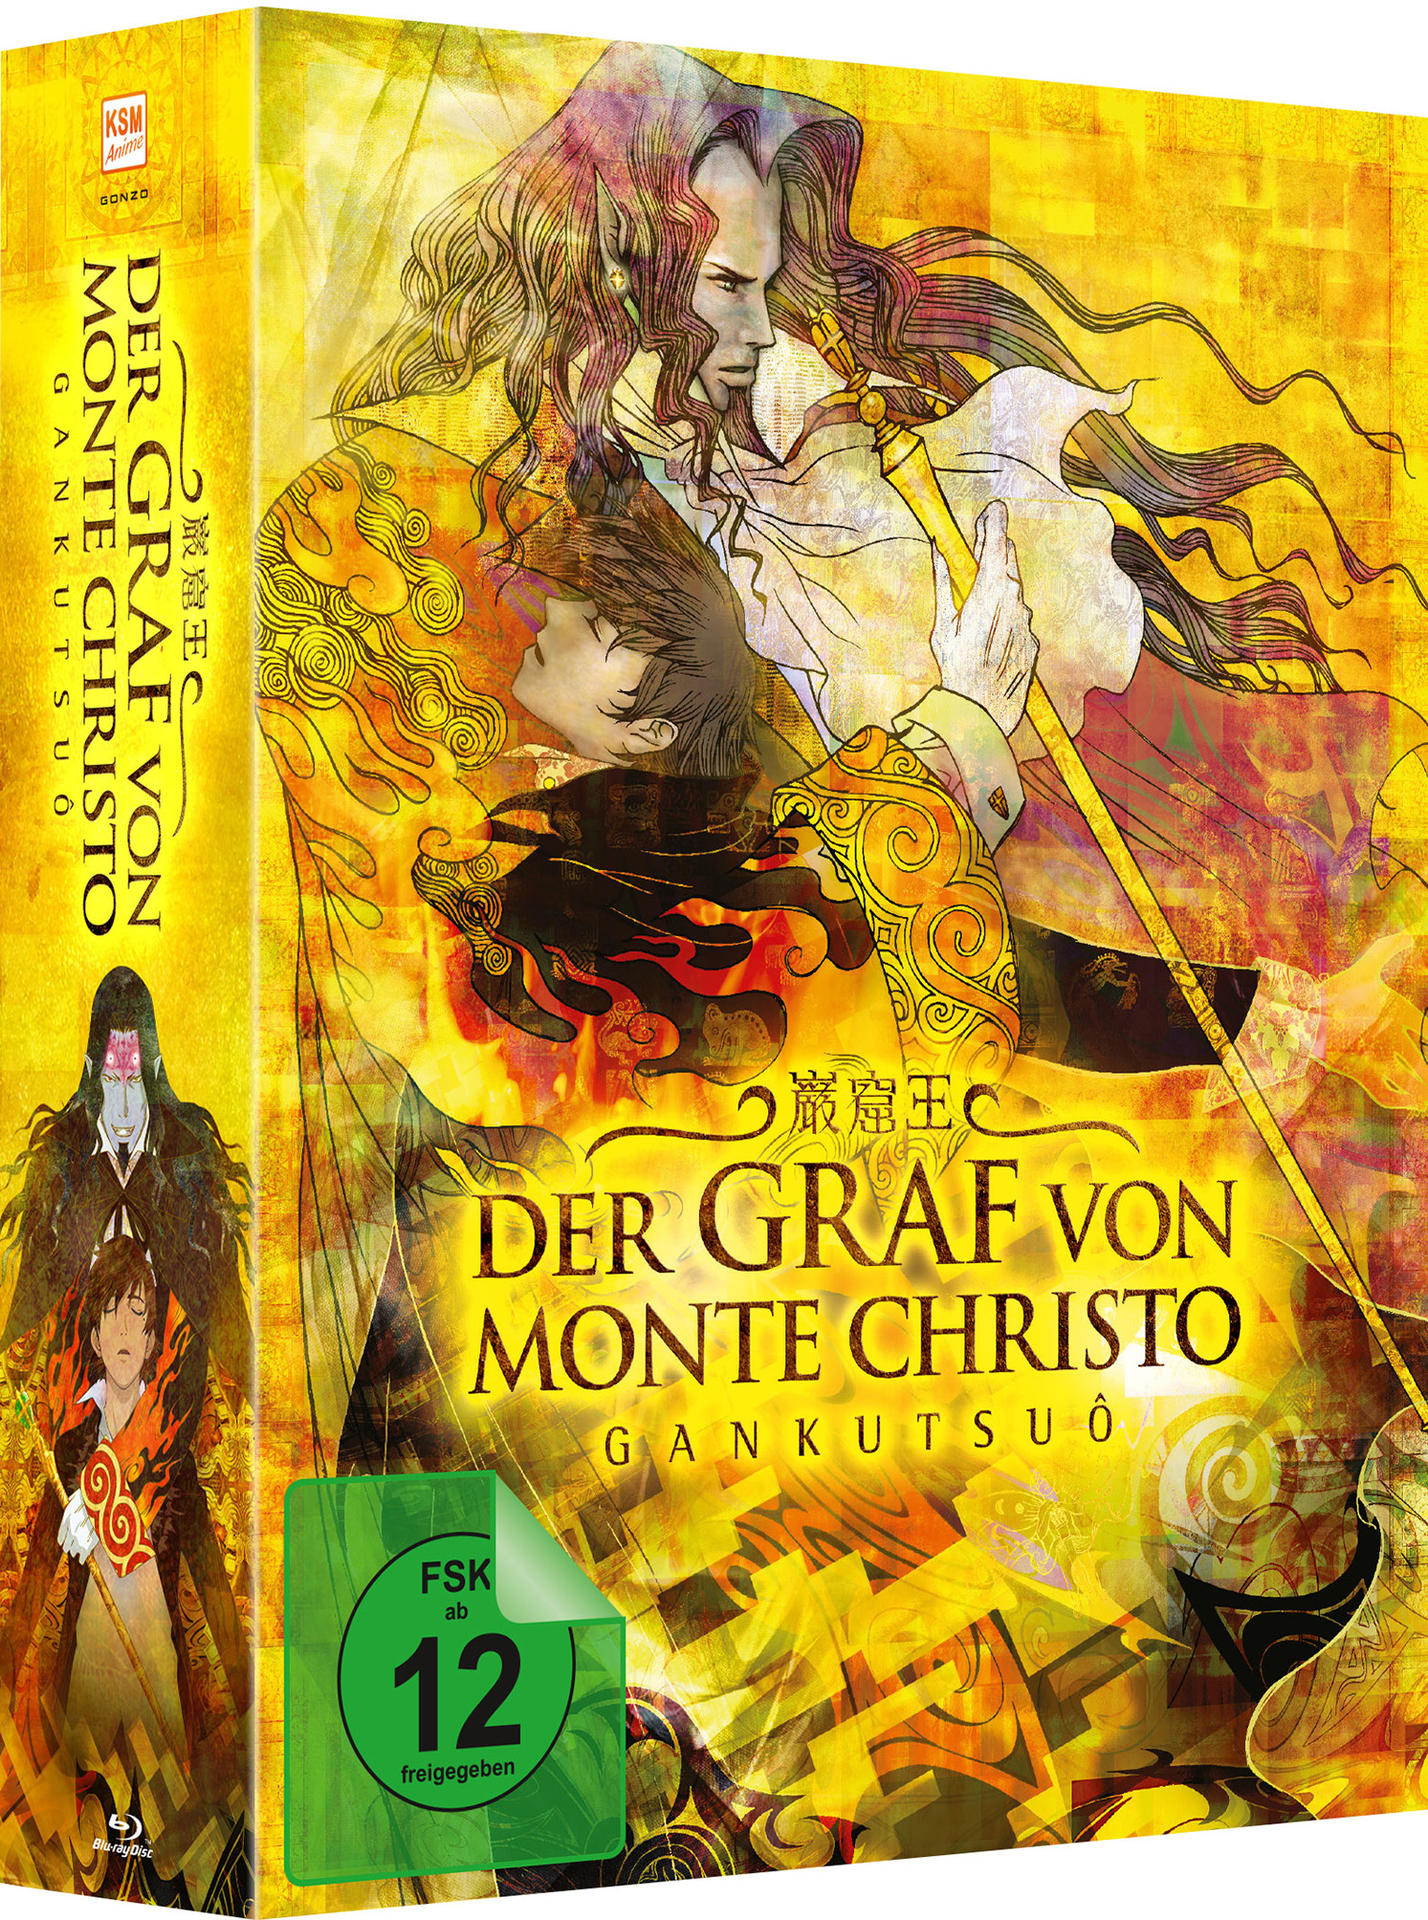 Monte Christo von Der (Ep. Graf Vol. 17-24) Blu-ray - 3